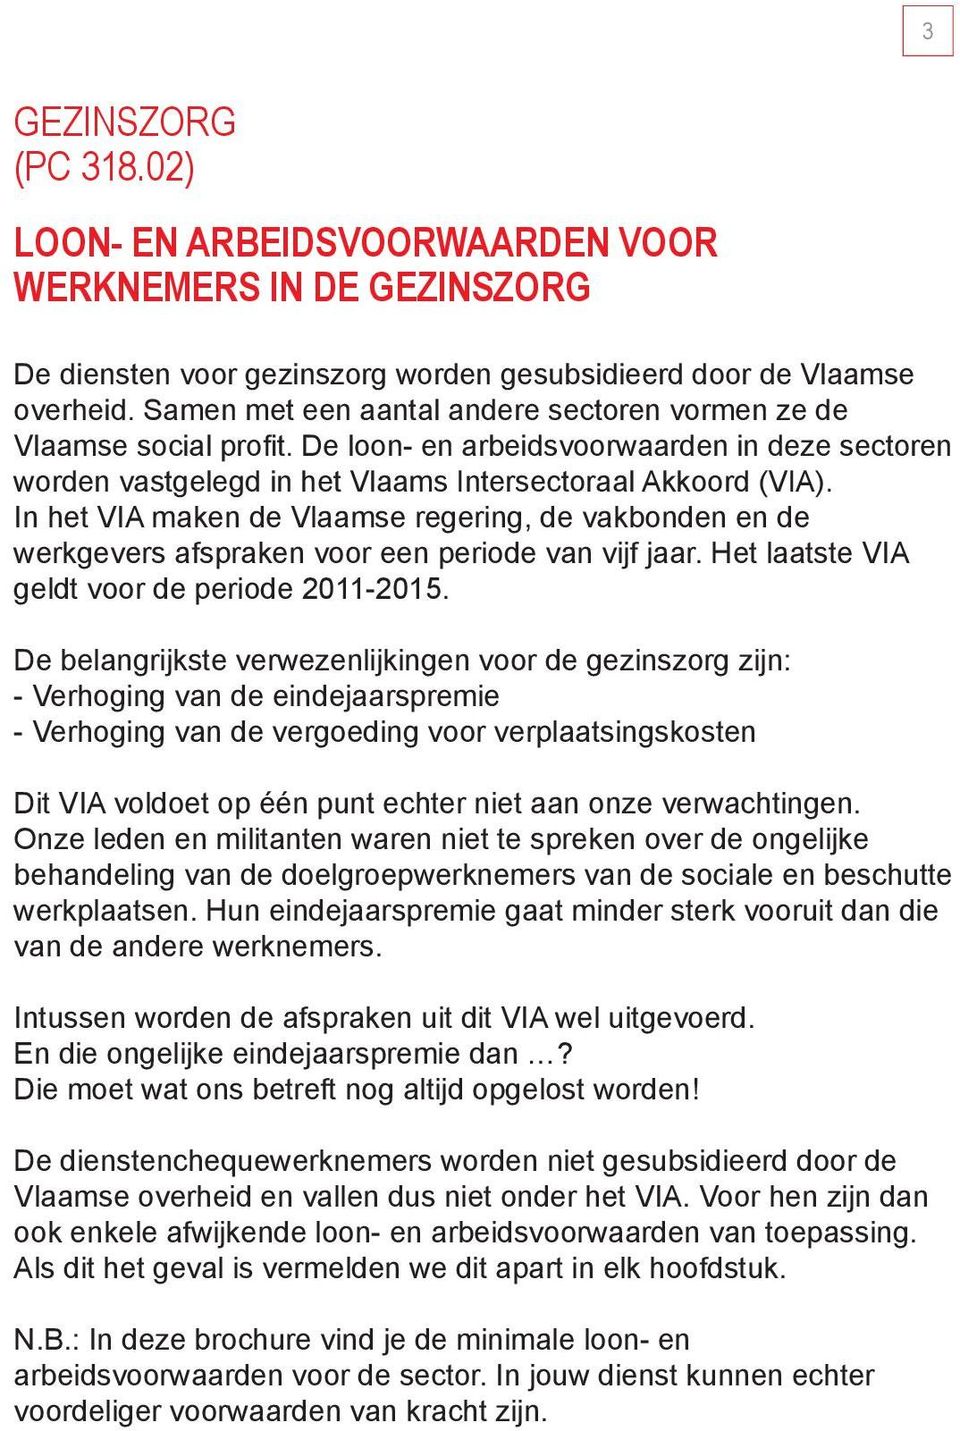 In het VIA maken de Vlaamse regering, de vakbonden en de werkgevers afspraken voor een periode van vijf jaar. Het laatste VIA geldt voor de periode 2011-2015.